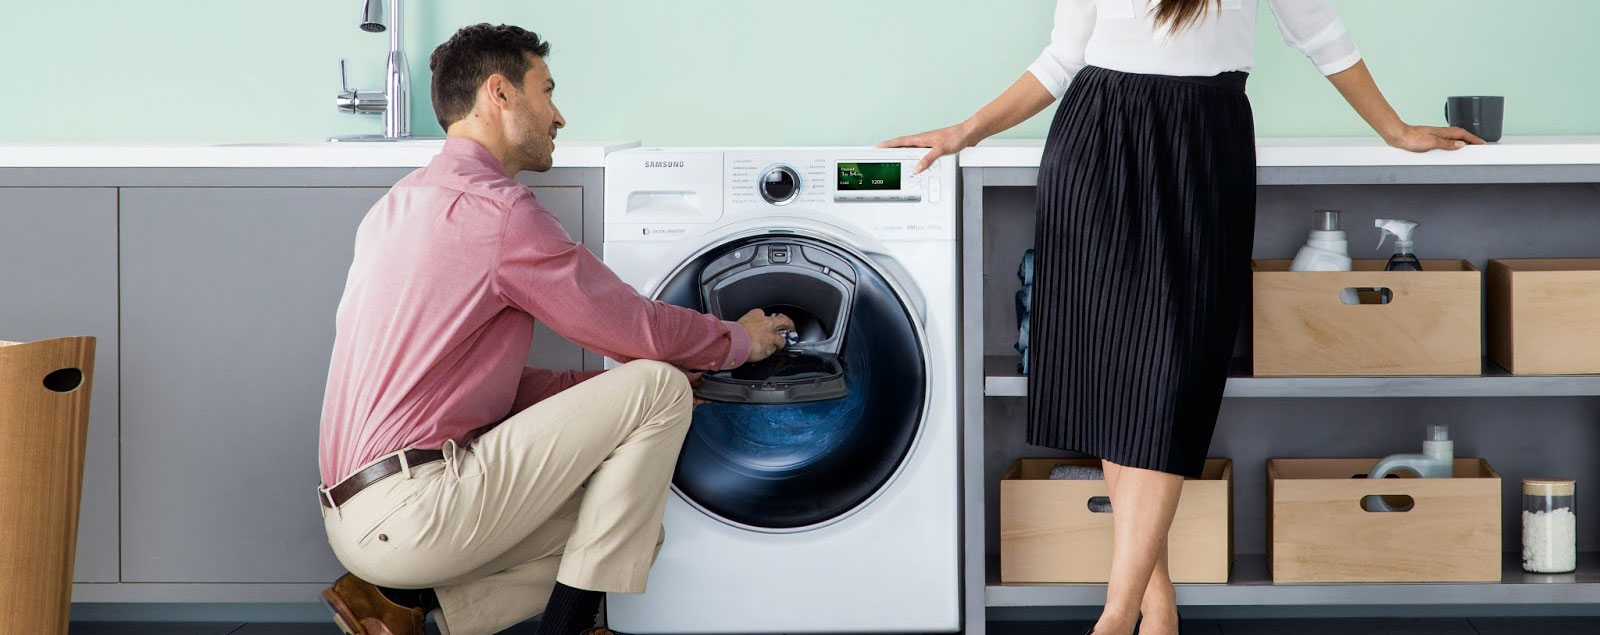 ремонт стиральных машин во фрязино на дому